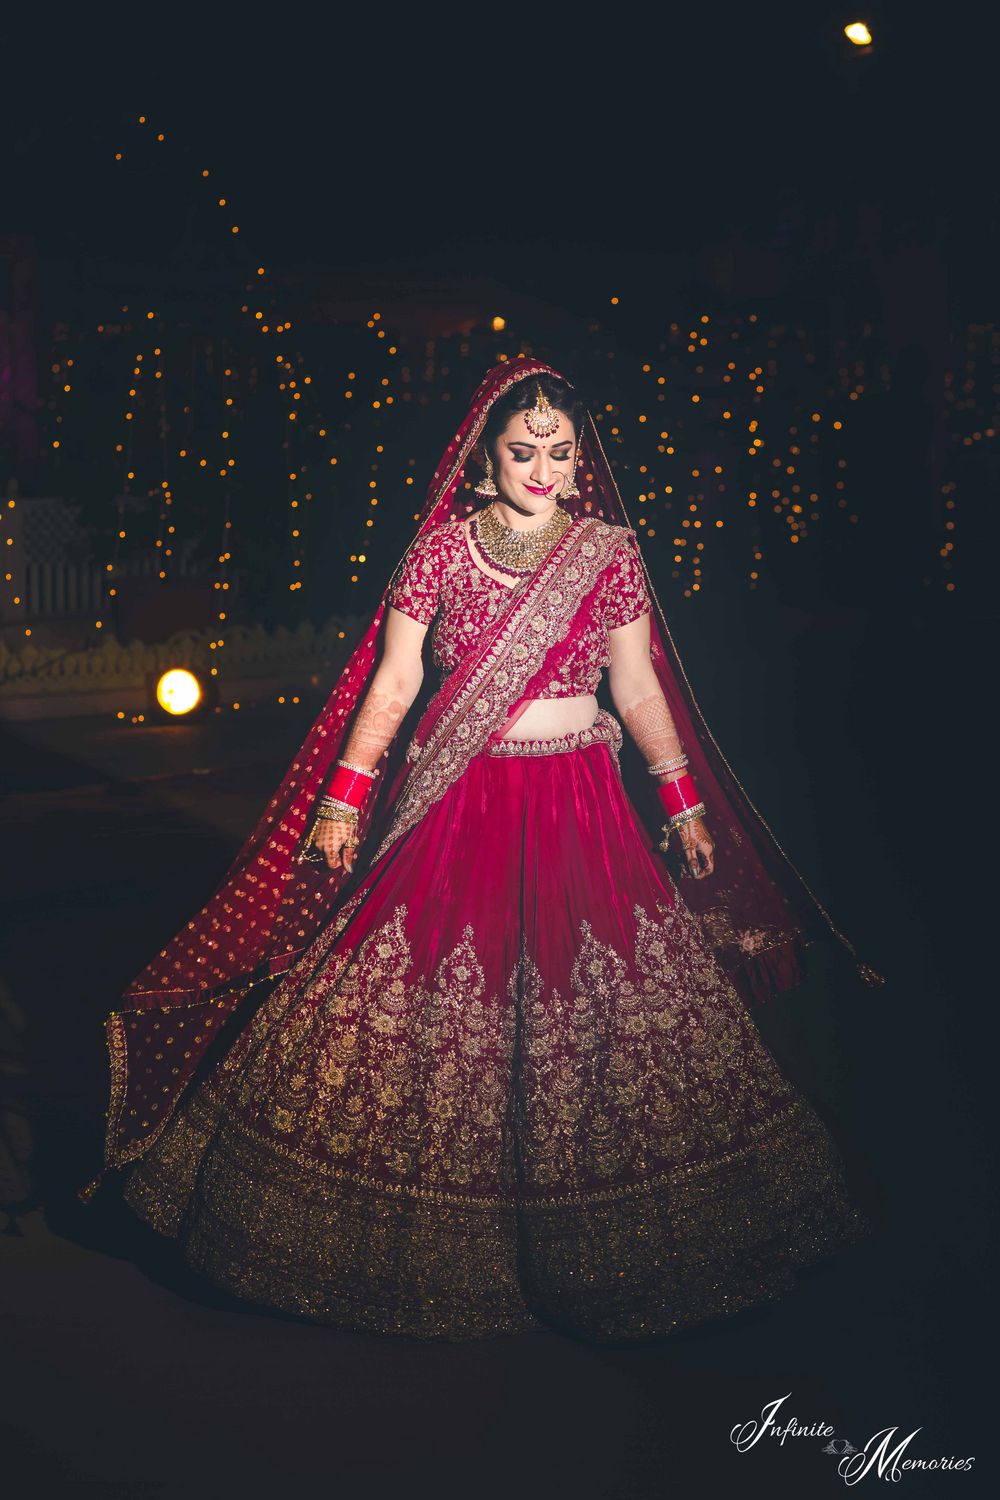 Photo of Bride posing in deep red bridal lehenga at night